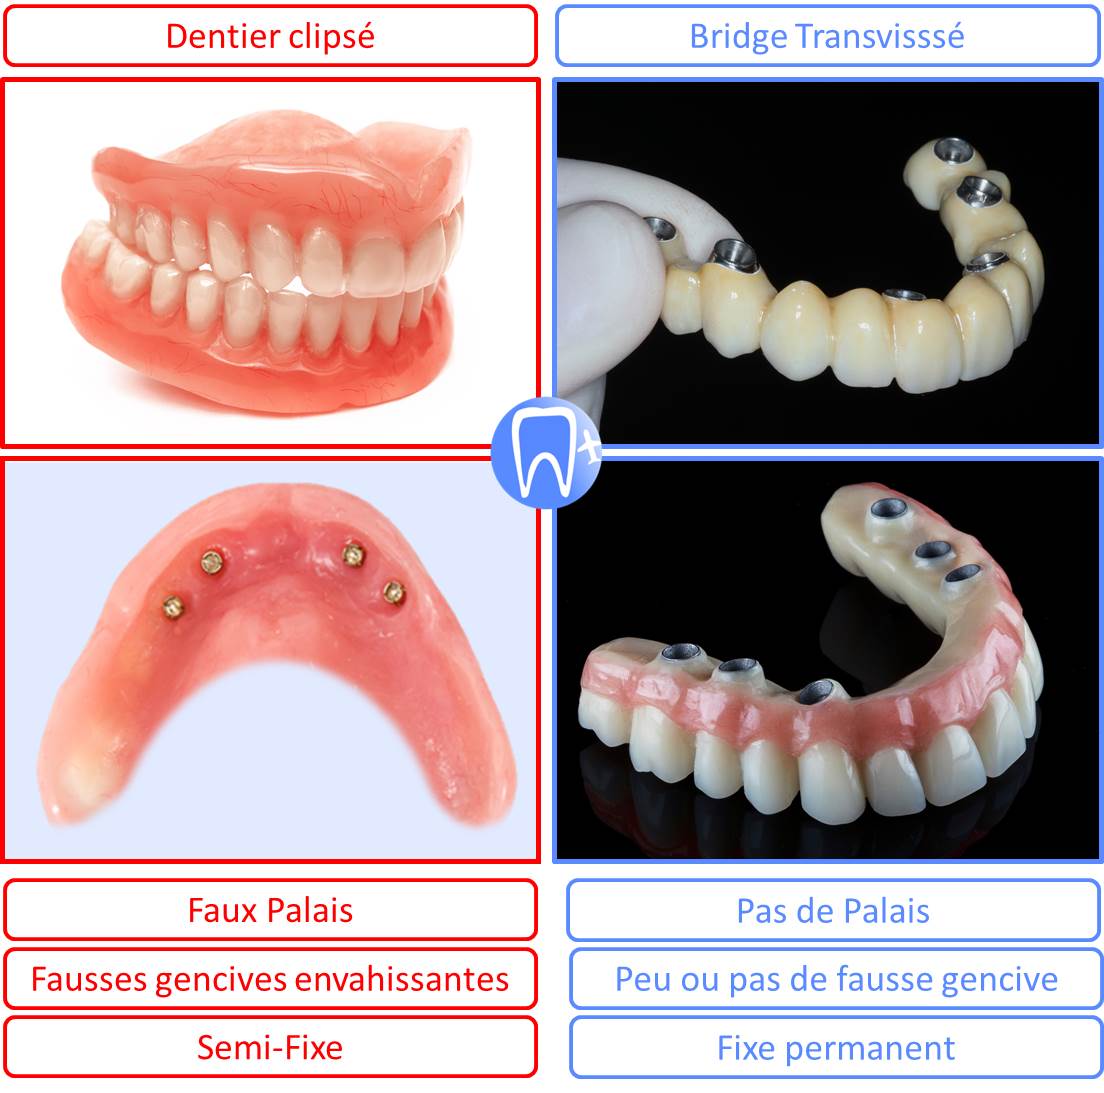 Dentition complete fixe bridge ou dentier